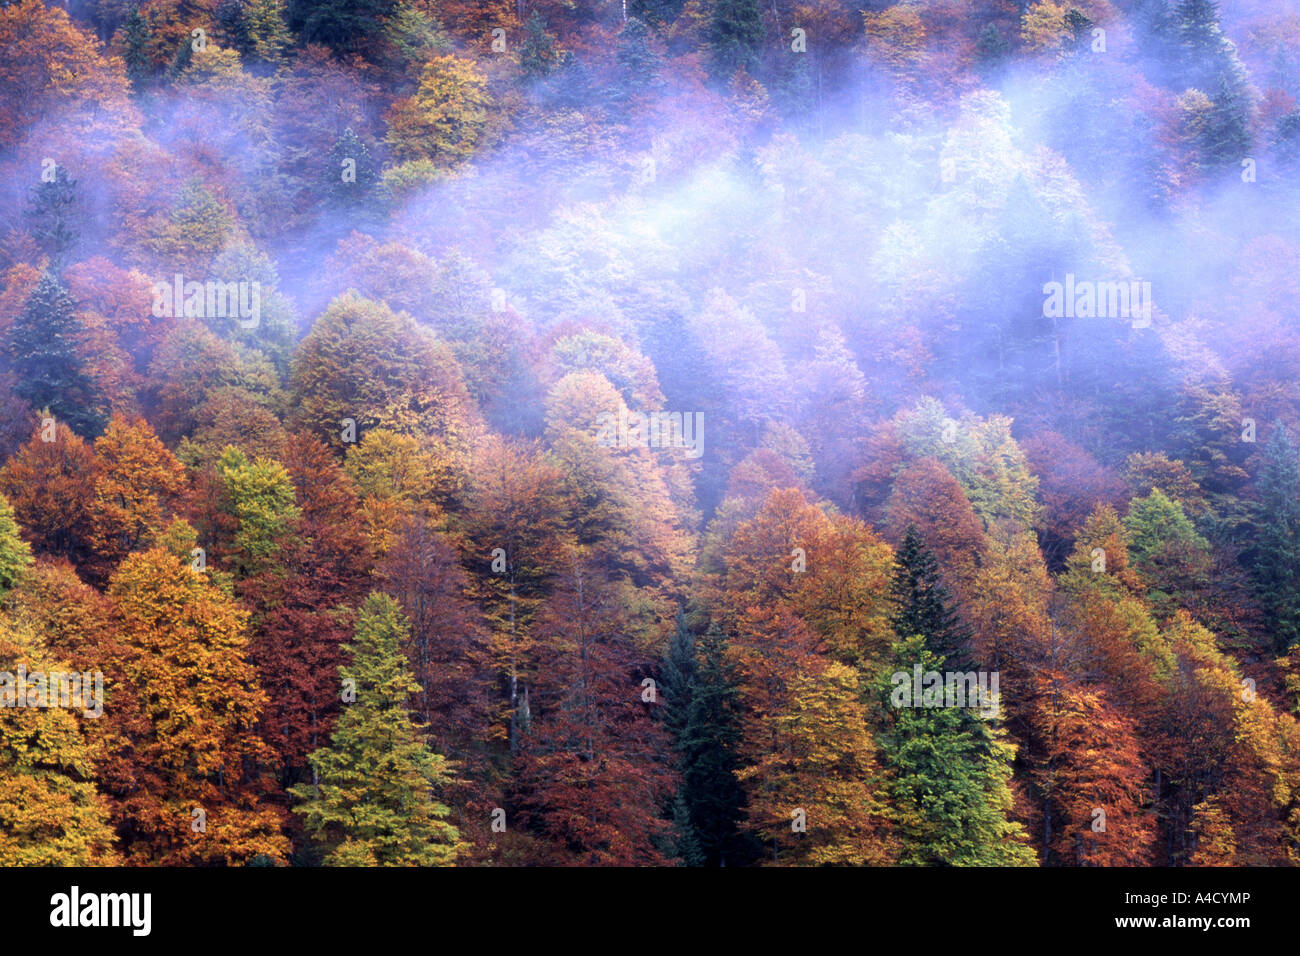 La forêt de feuillus à l'automne. Grand Ahornboden dans Karwendel partie d'un paysage bavarois tyrolien de conservation Banque D'Images